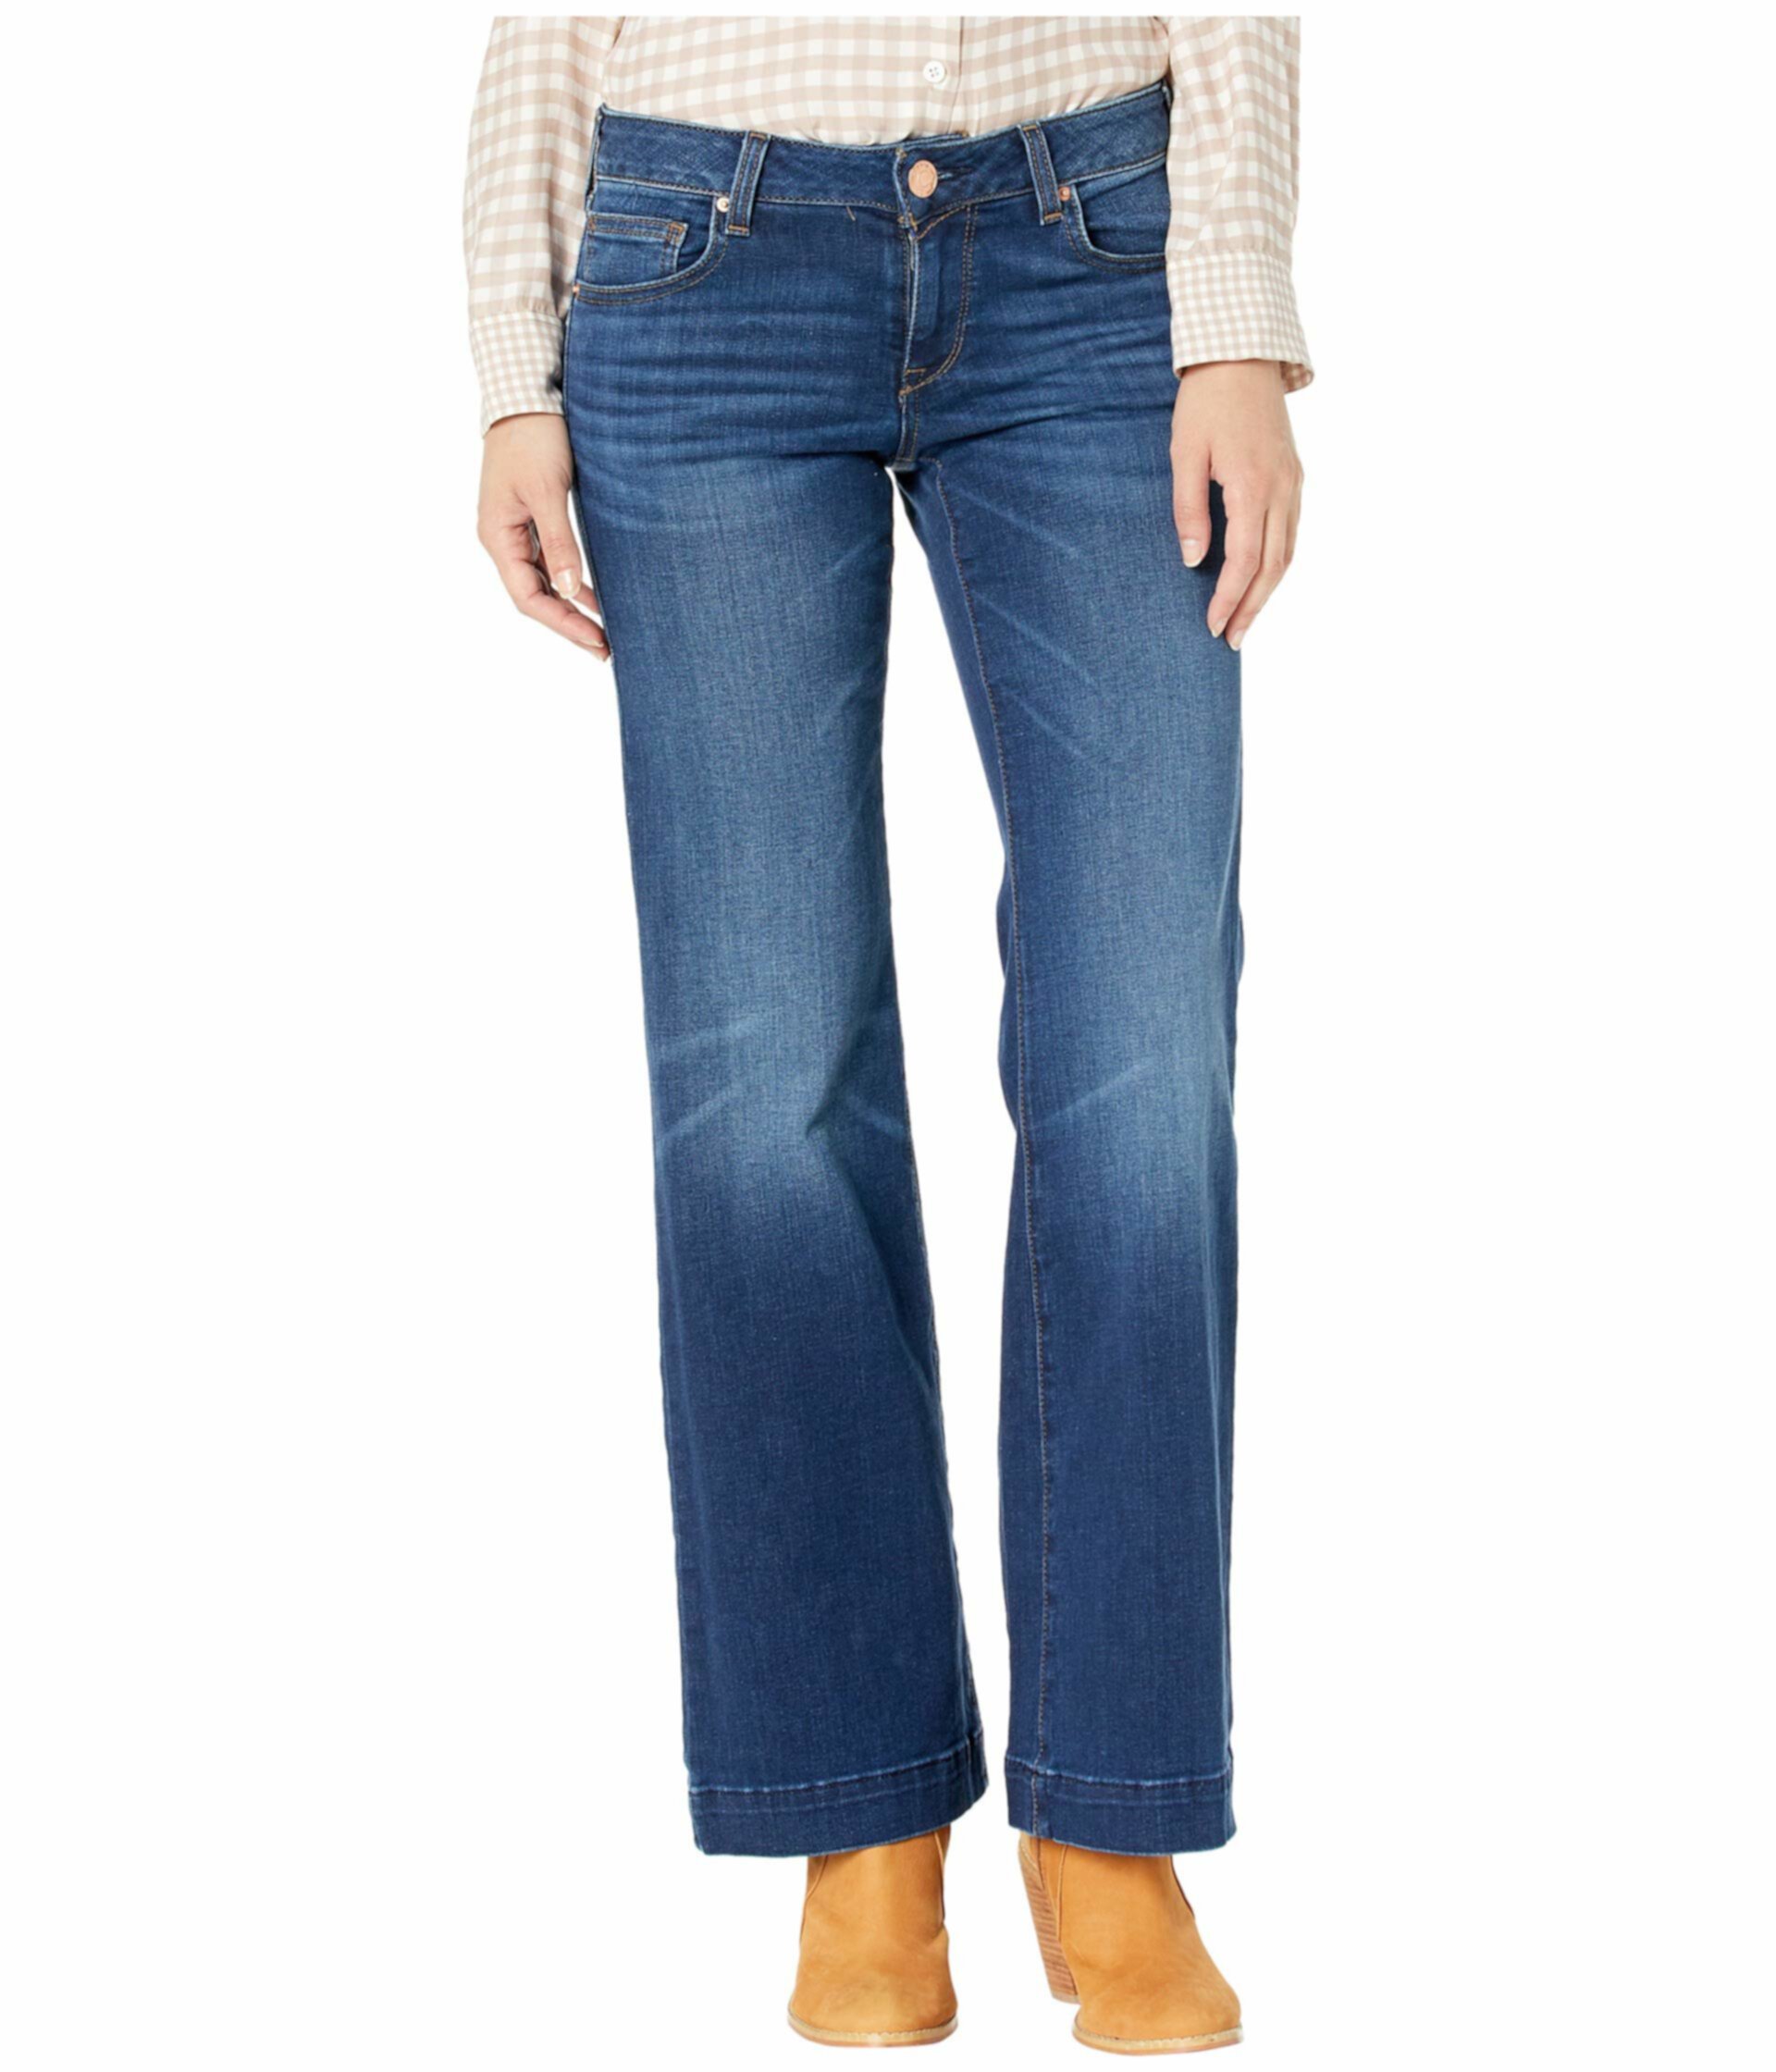 Ультра эластичные брюки Kelsea Jeans в цвете Joanna Ariat